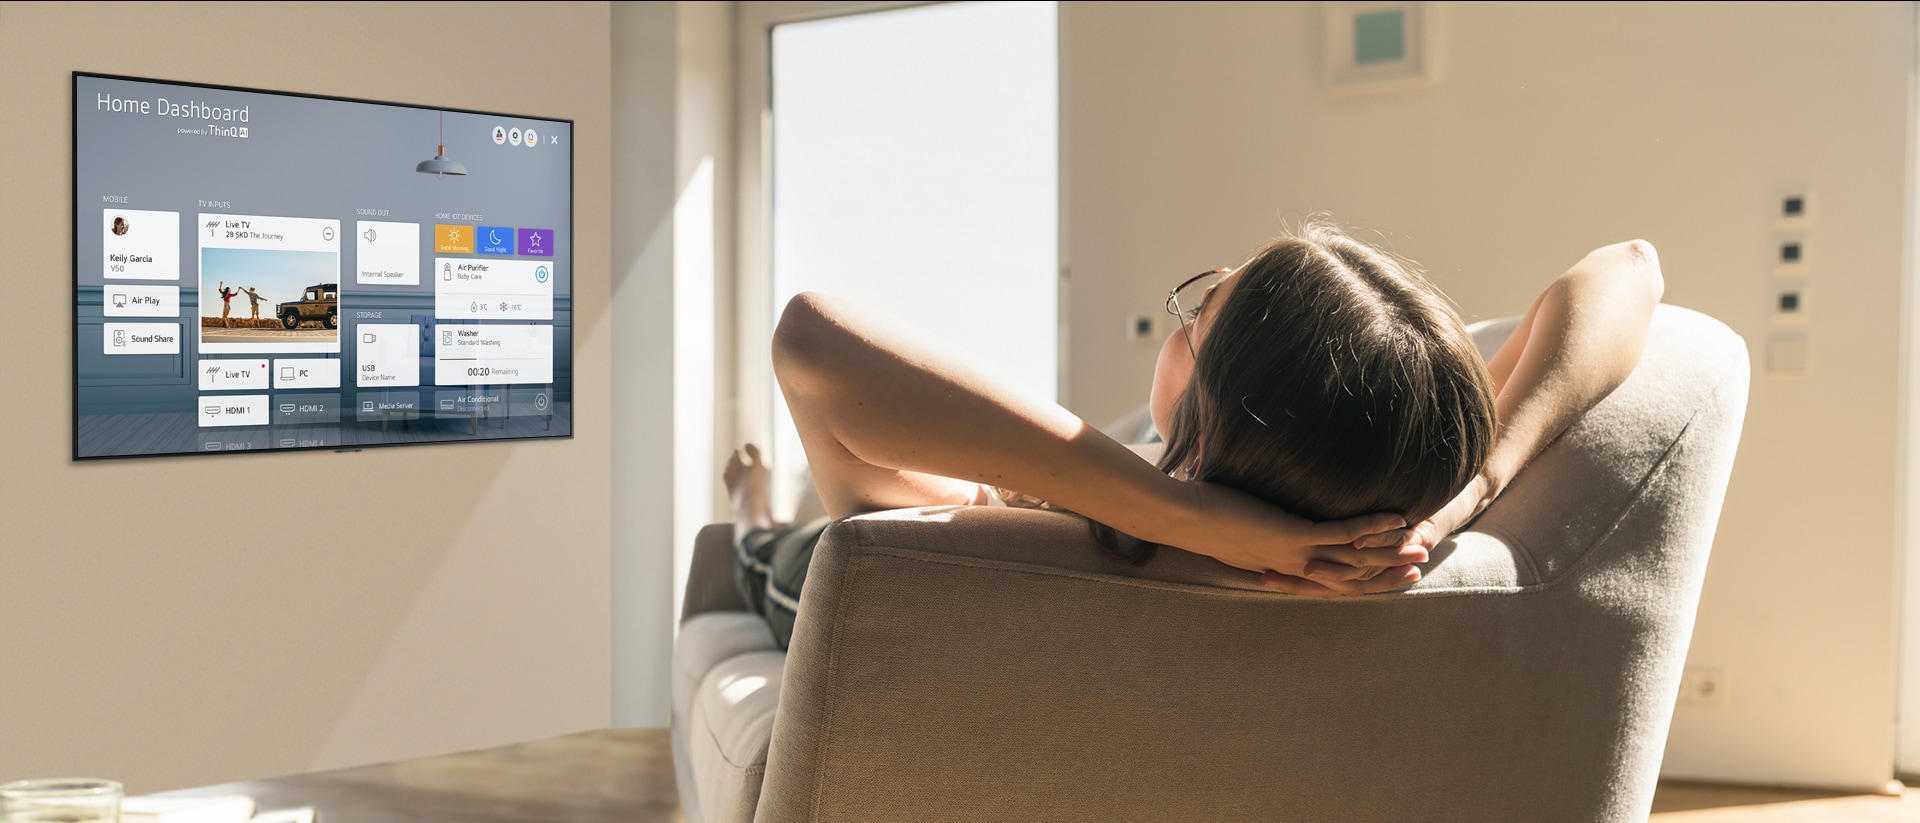 Vrouw liggend op een bank vertelt de tv om de temperatuur te verlagen met het home dashboard op het tv-scherm